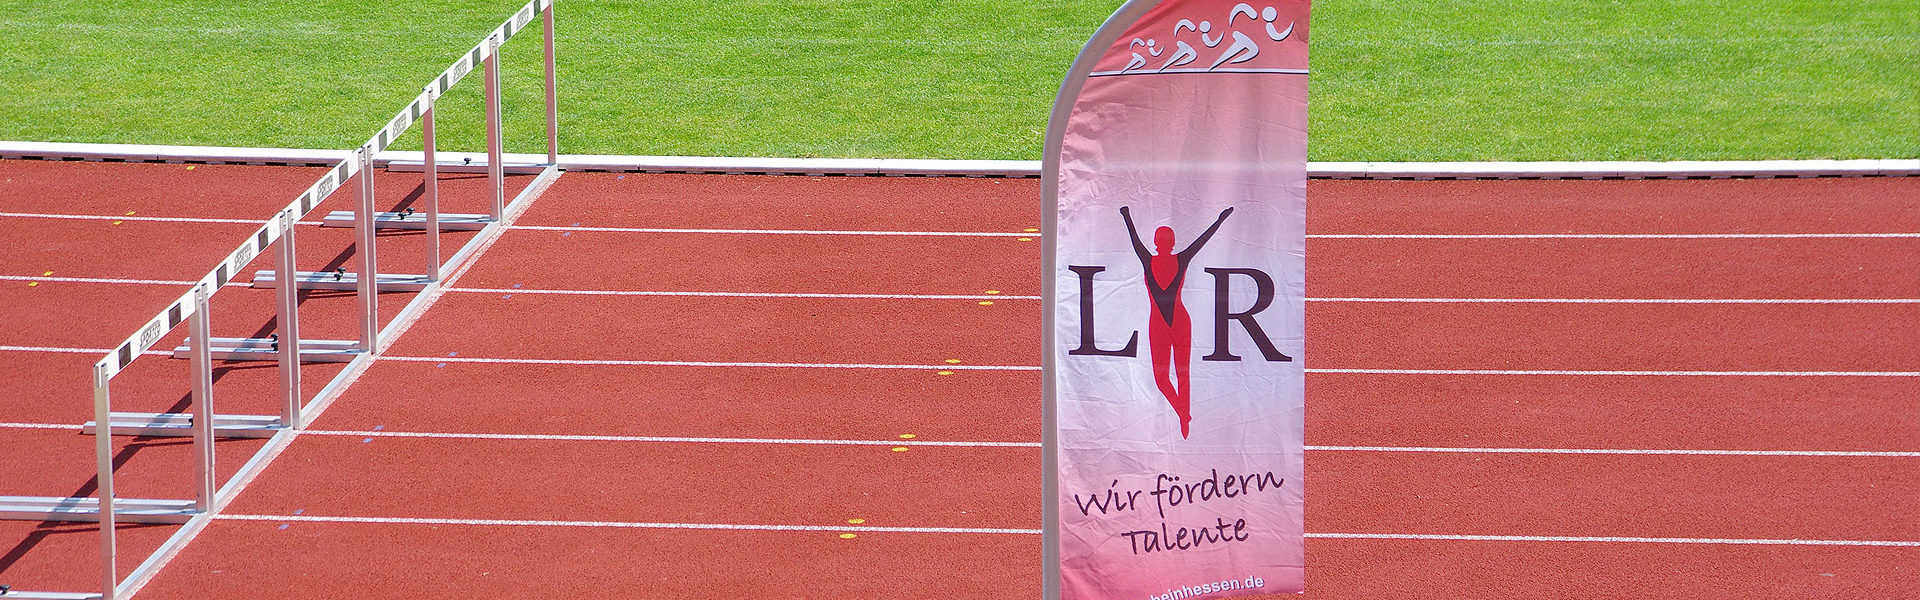 Leichtathletik-Verband Rheinhessen